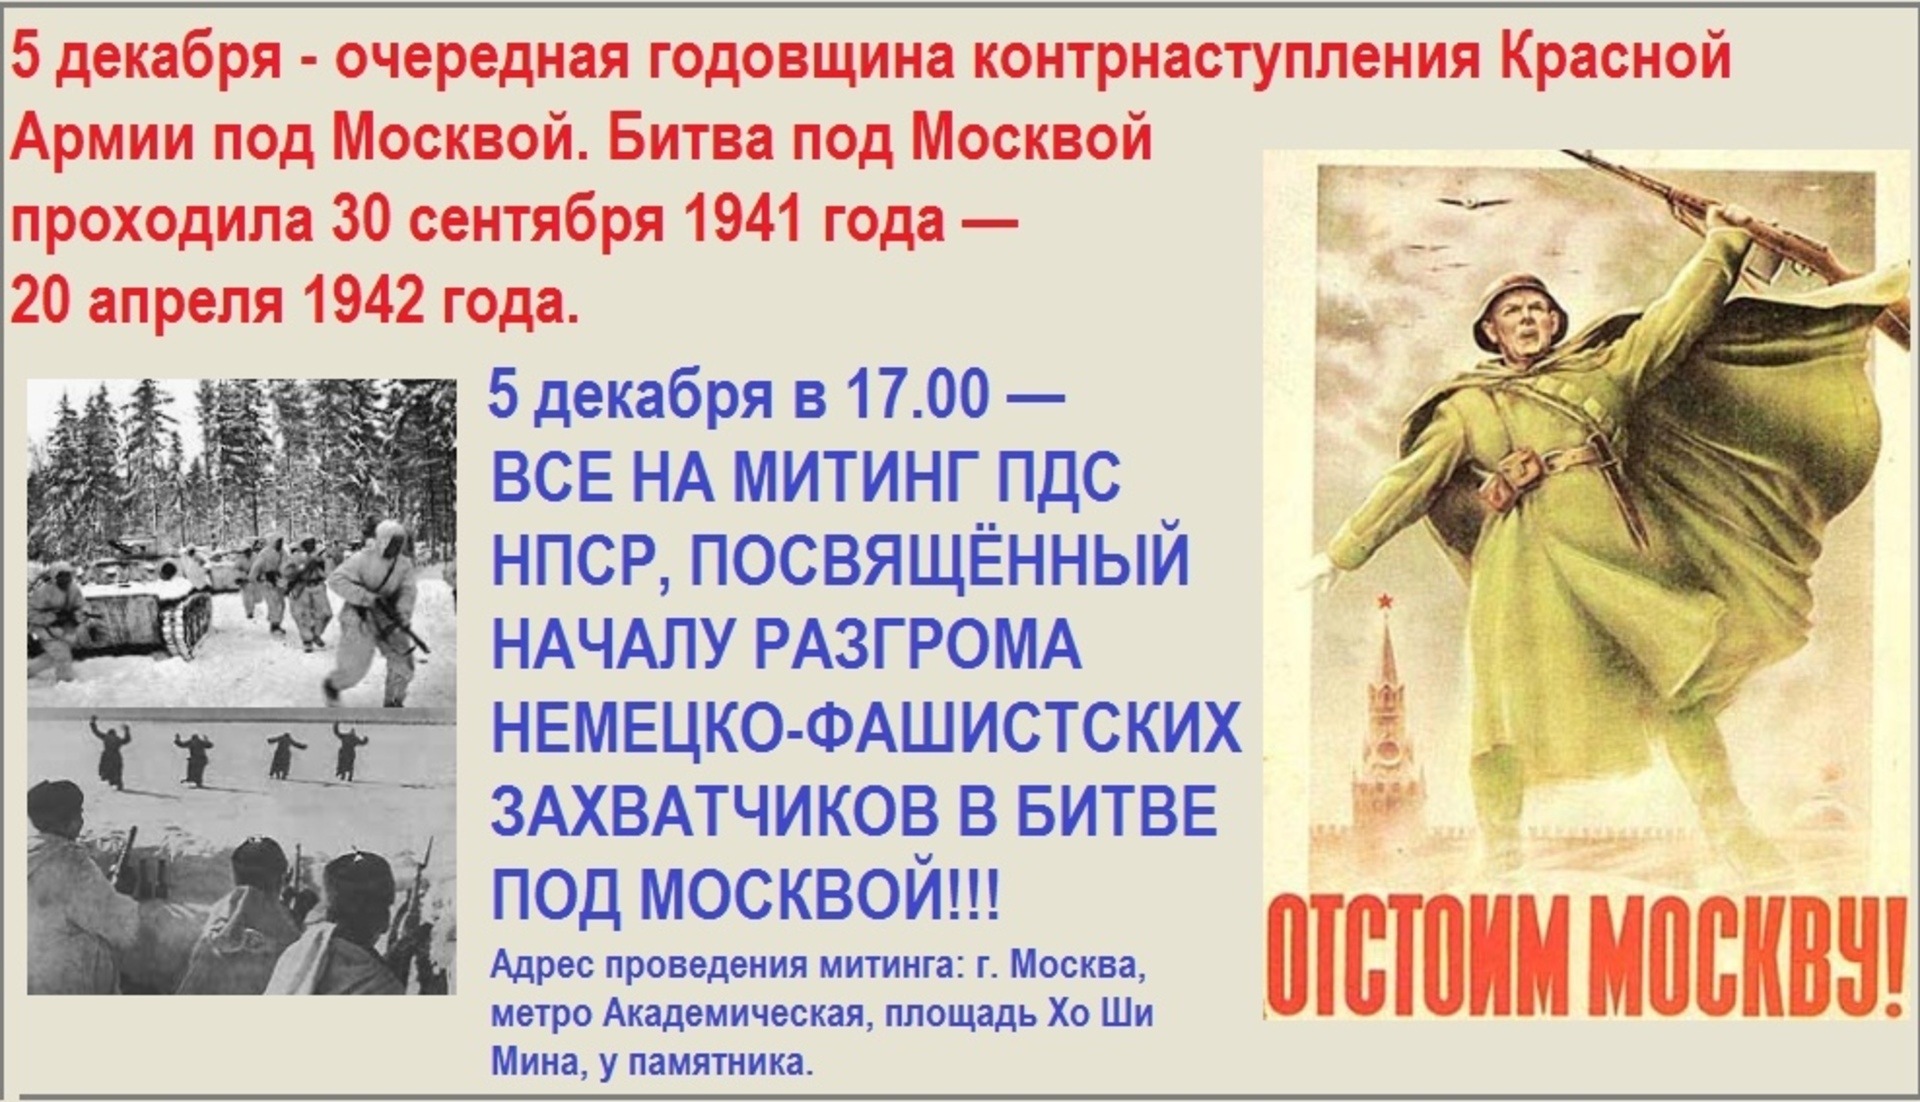 5 Декабря 1941 года битва под Москвой